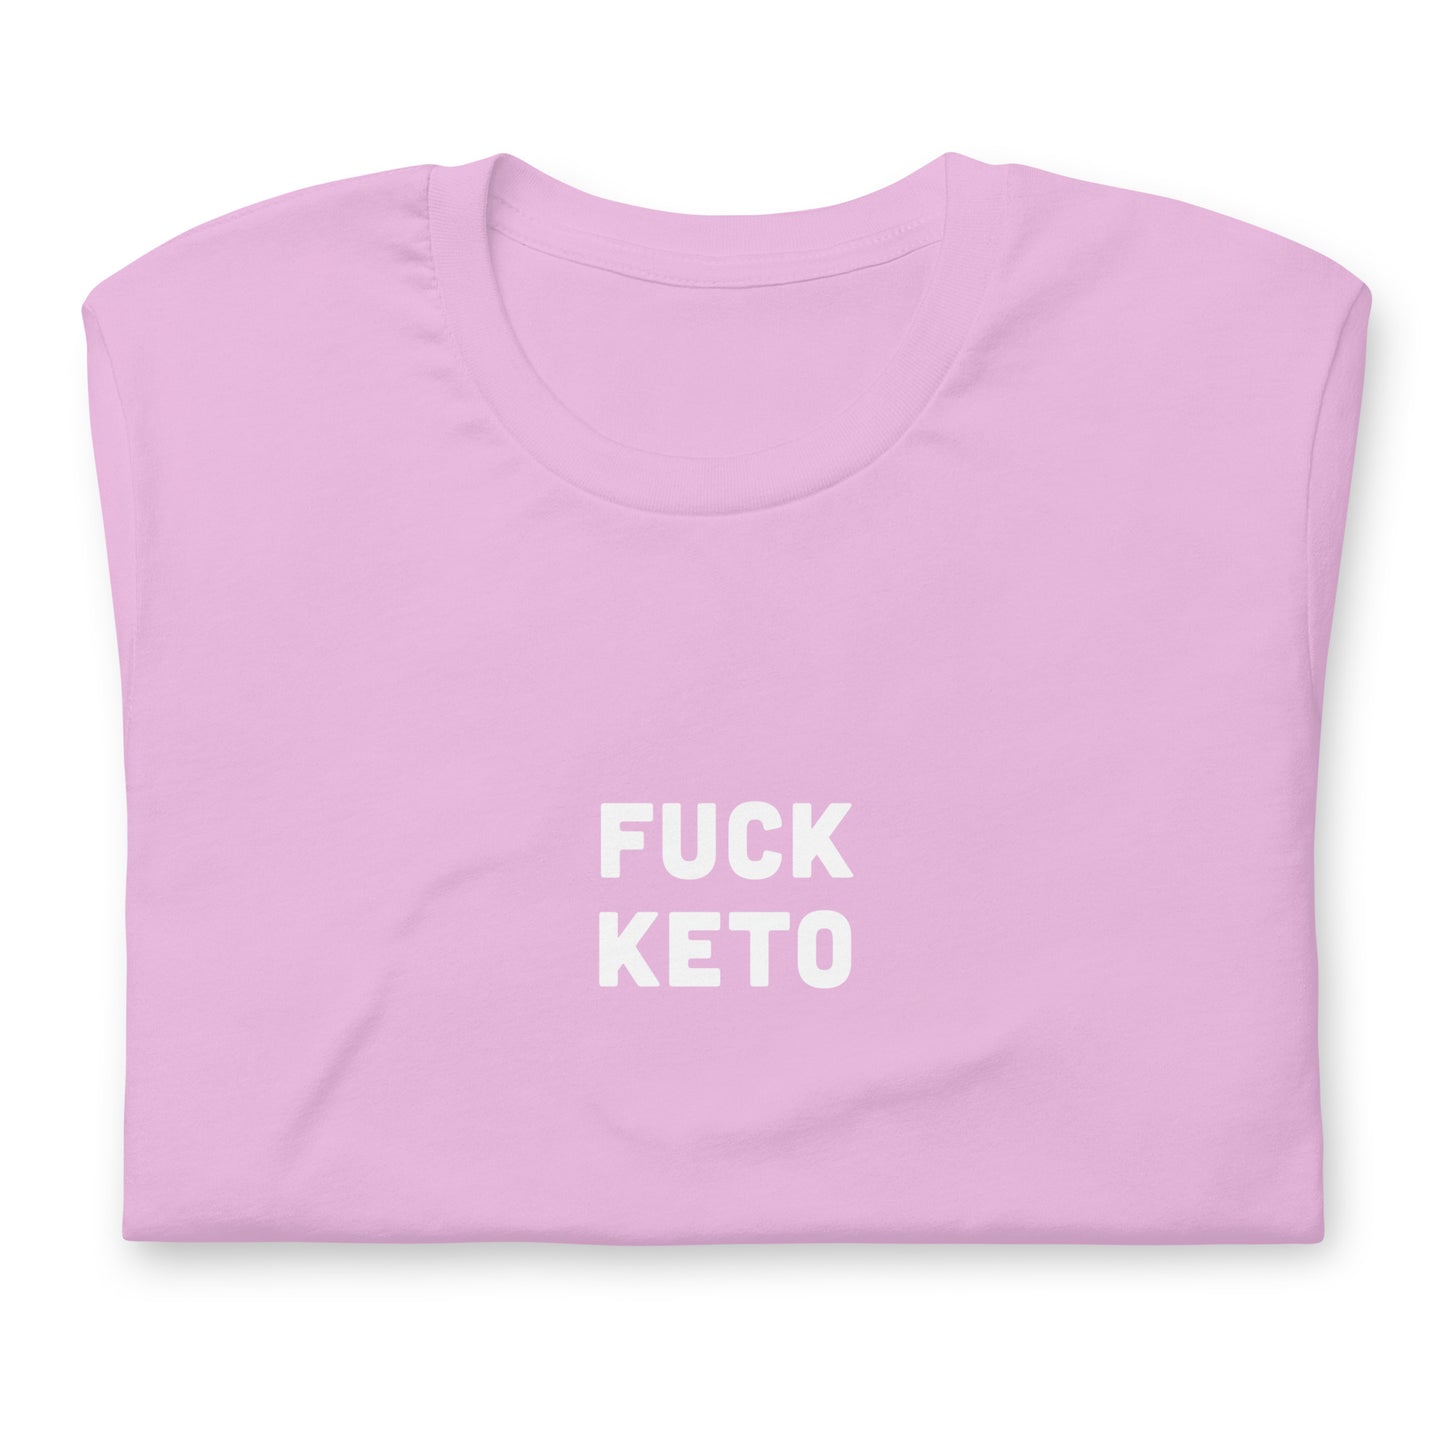 Fuck Keto T-Shirt Size M Color Asphalt